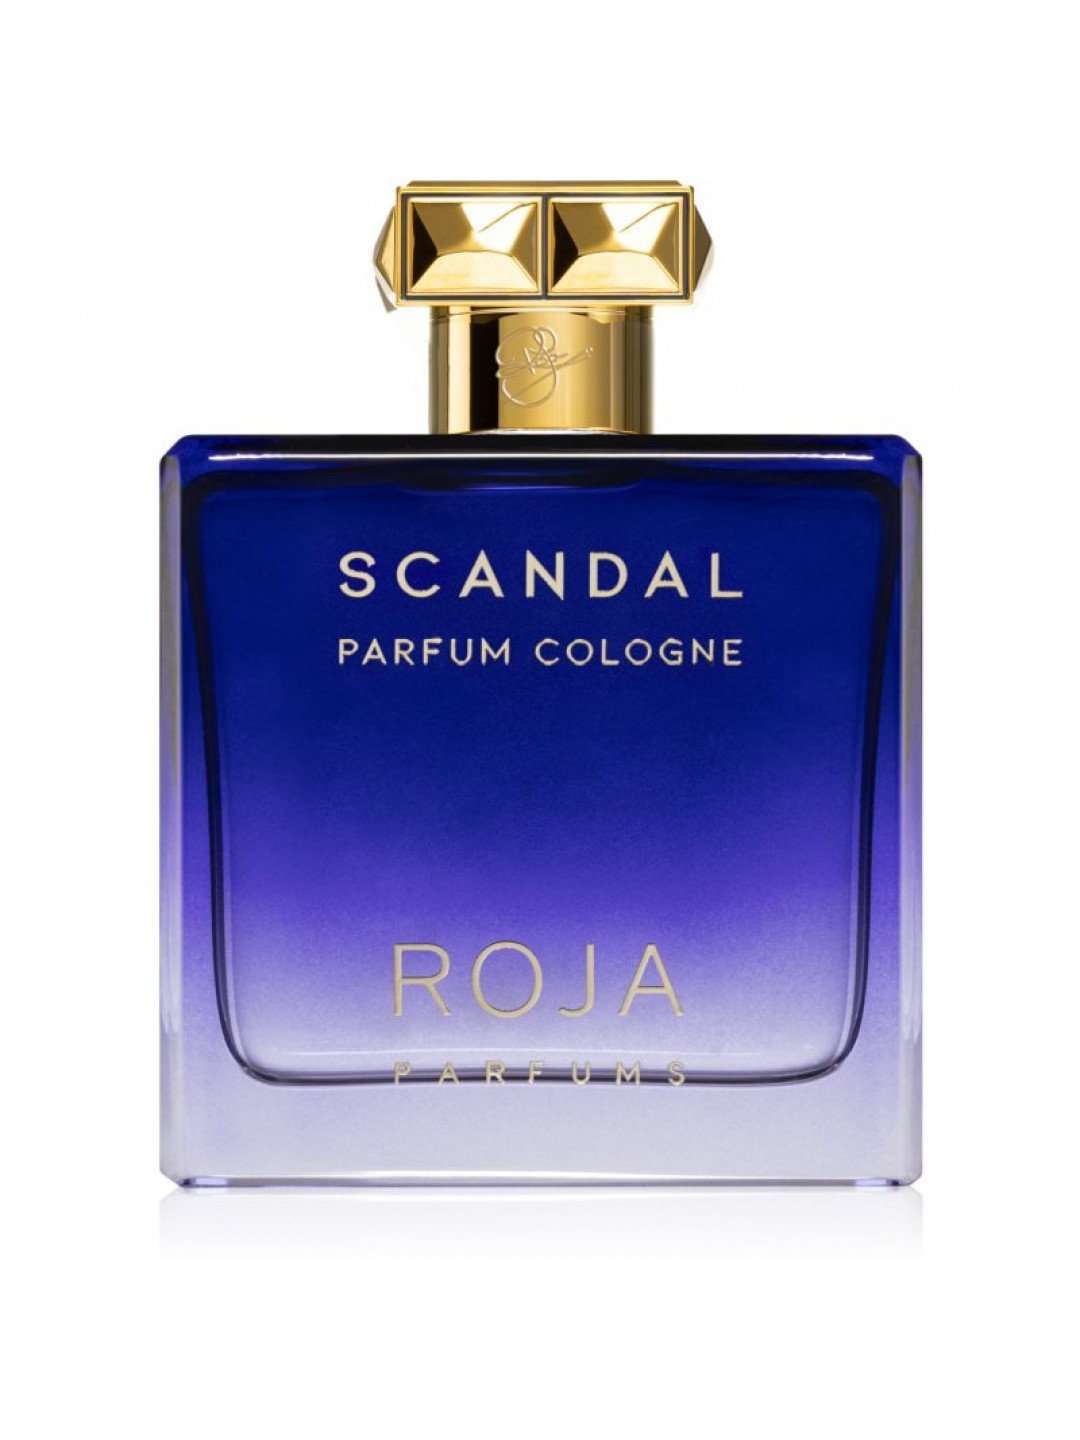 Roja Parfums Scandal Parfum Cologne kolínská voda pro muže 100 ml